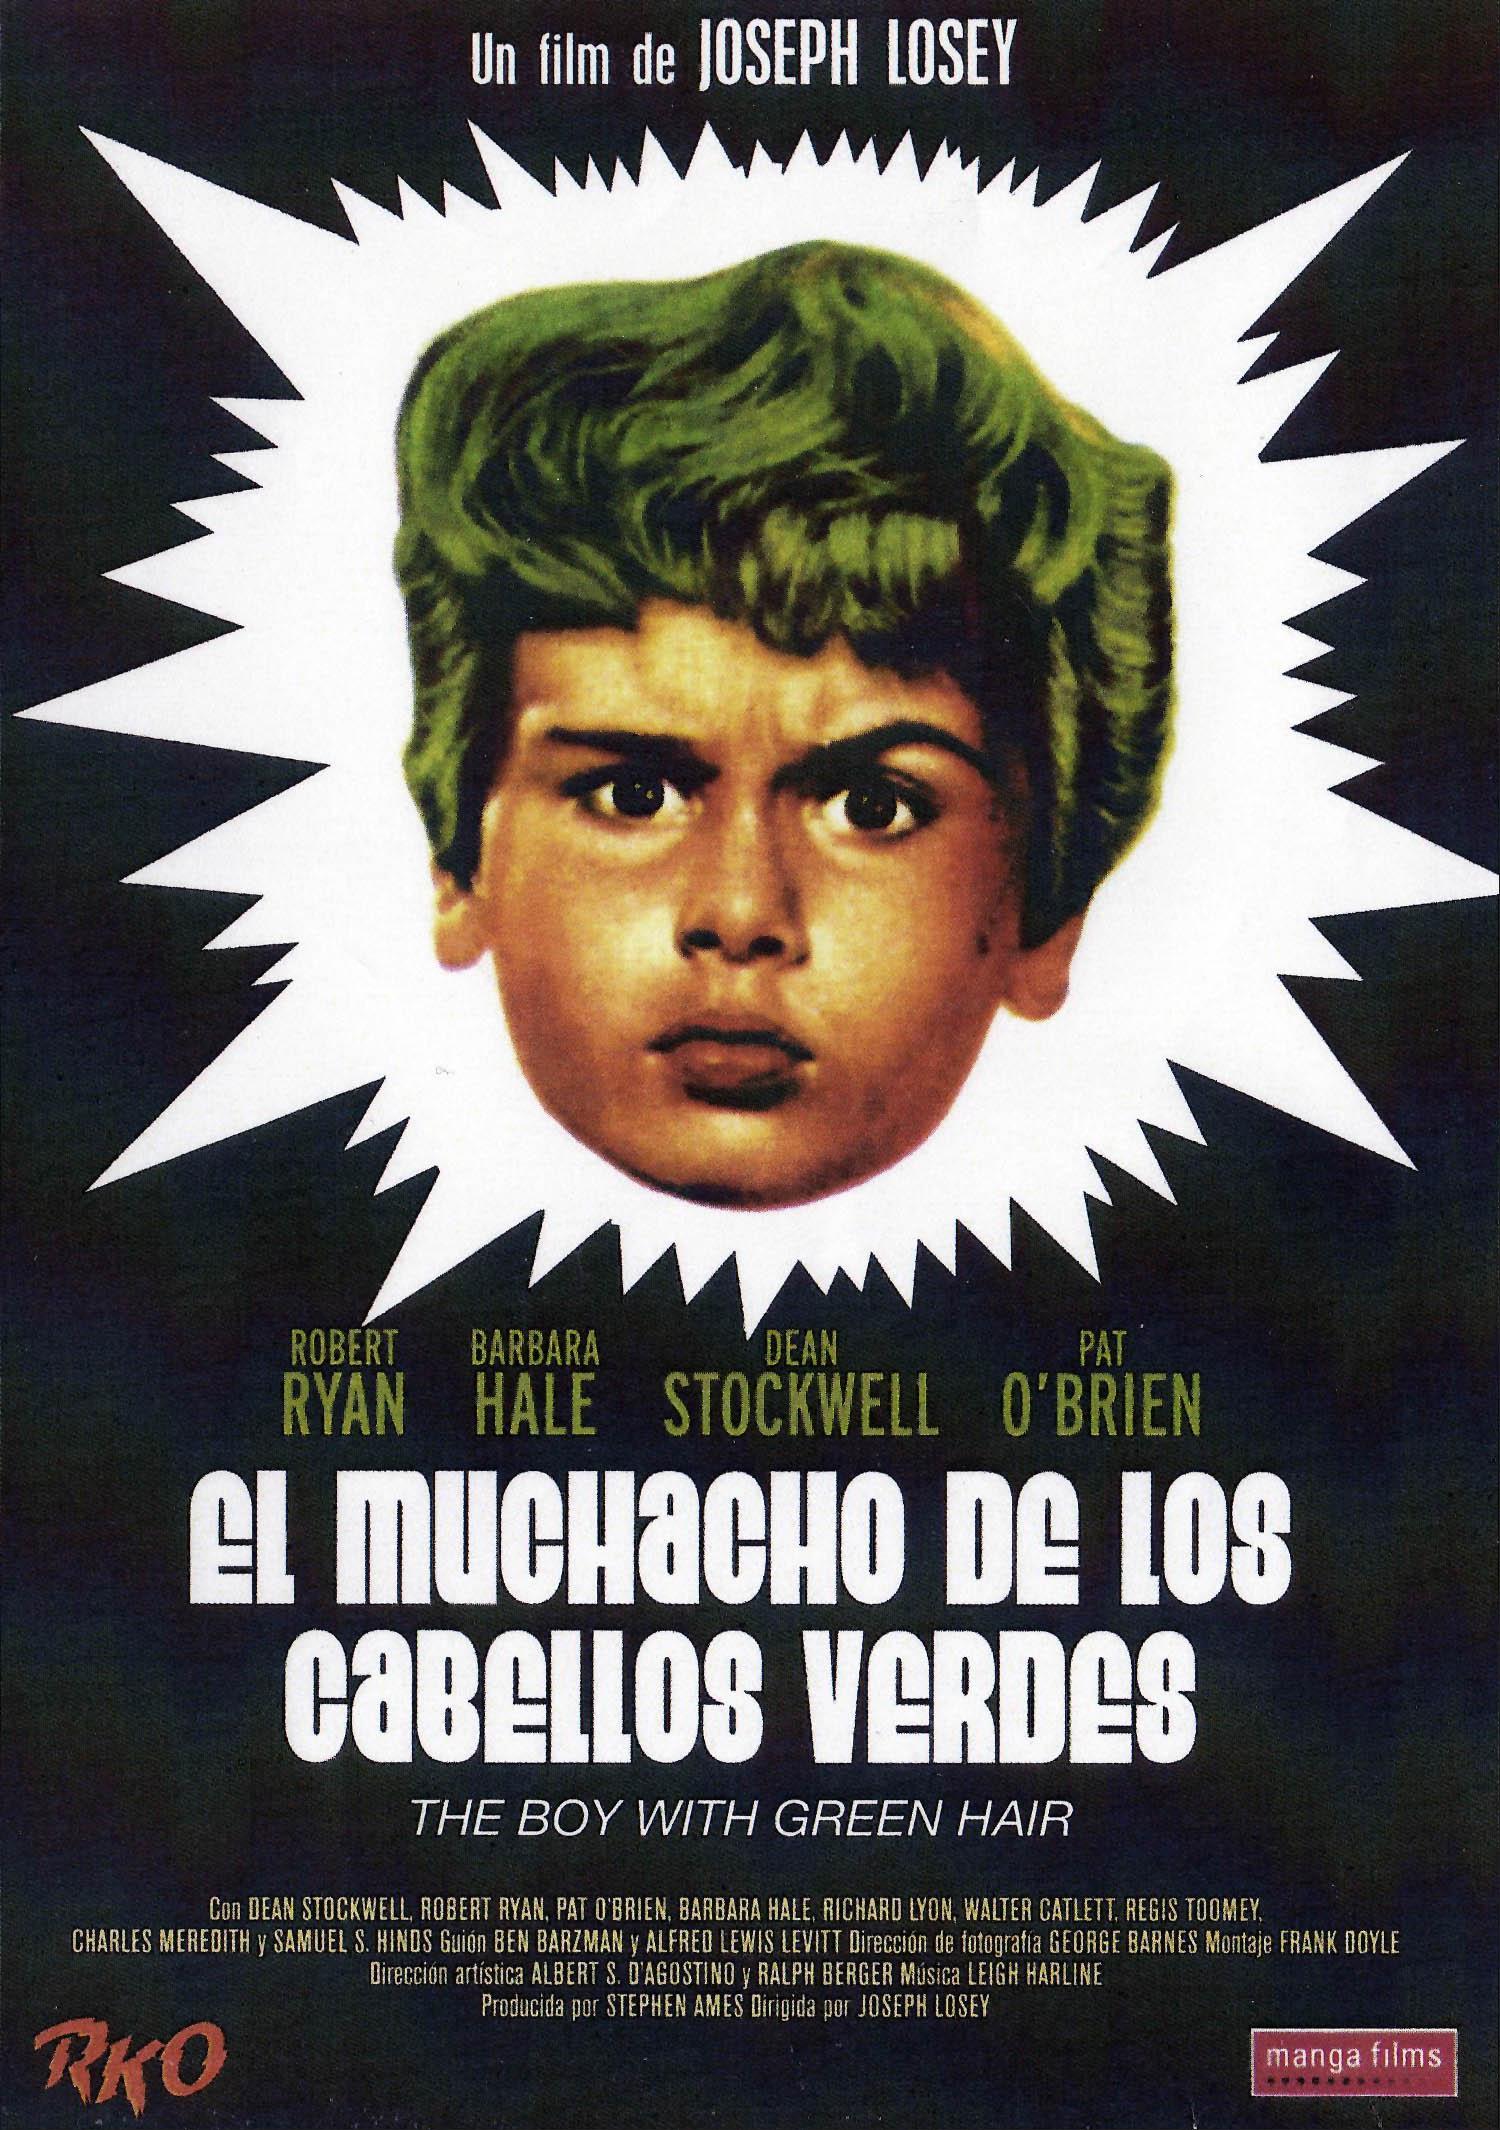 Постер фильма Мальчик с зелеными волосами | Boy with Green Hair